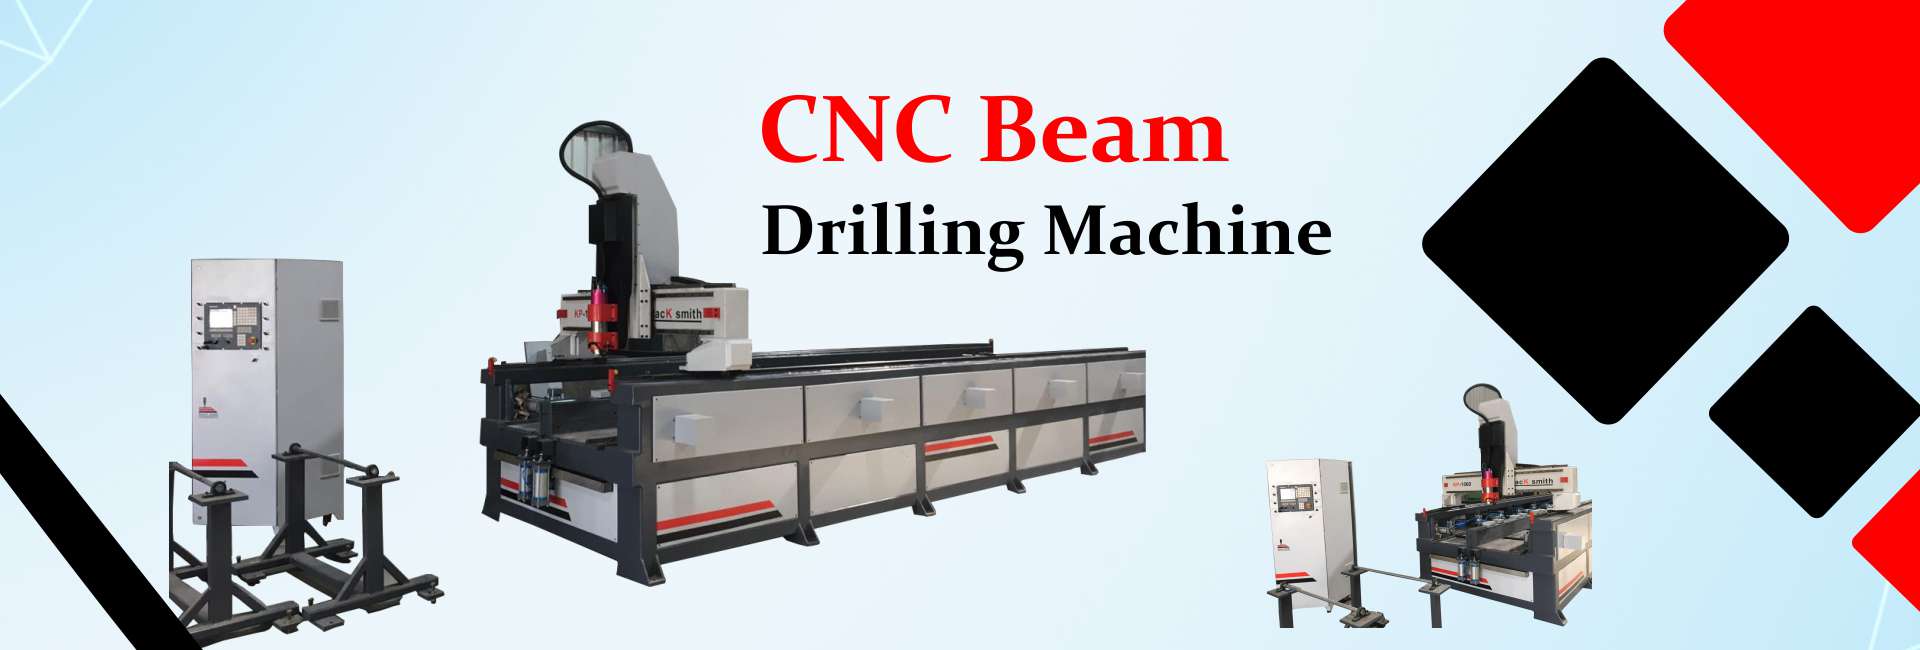 cnc beam drilling machine